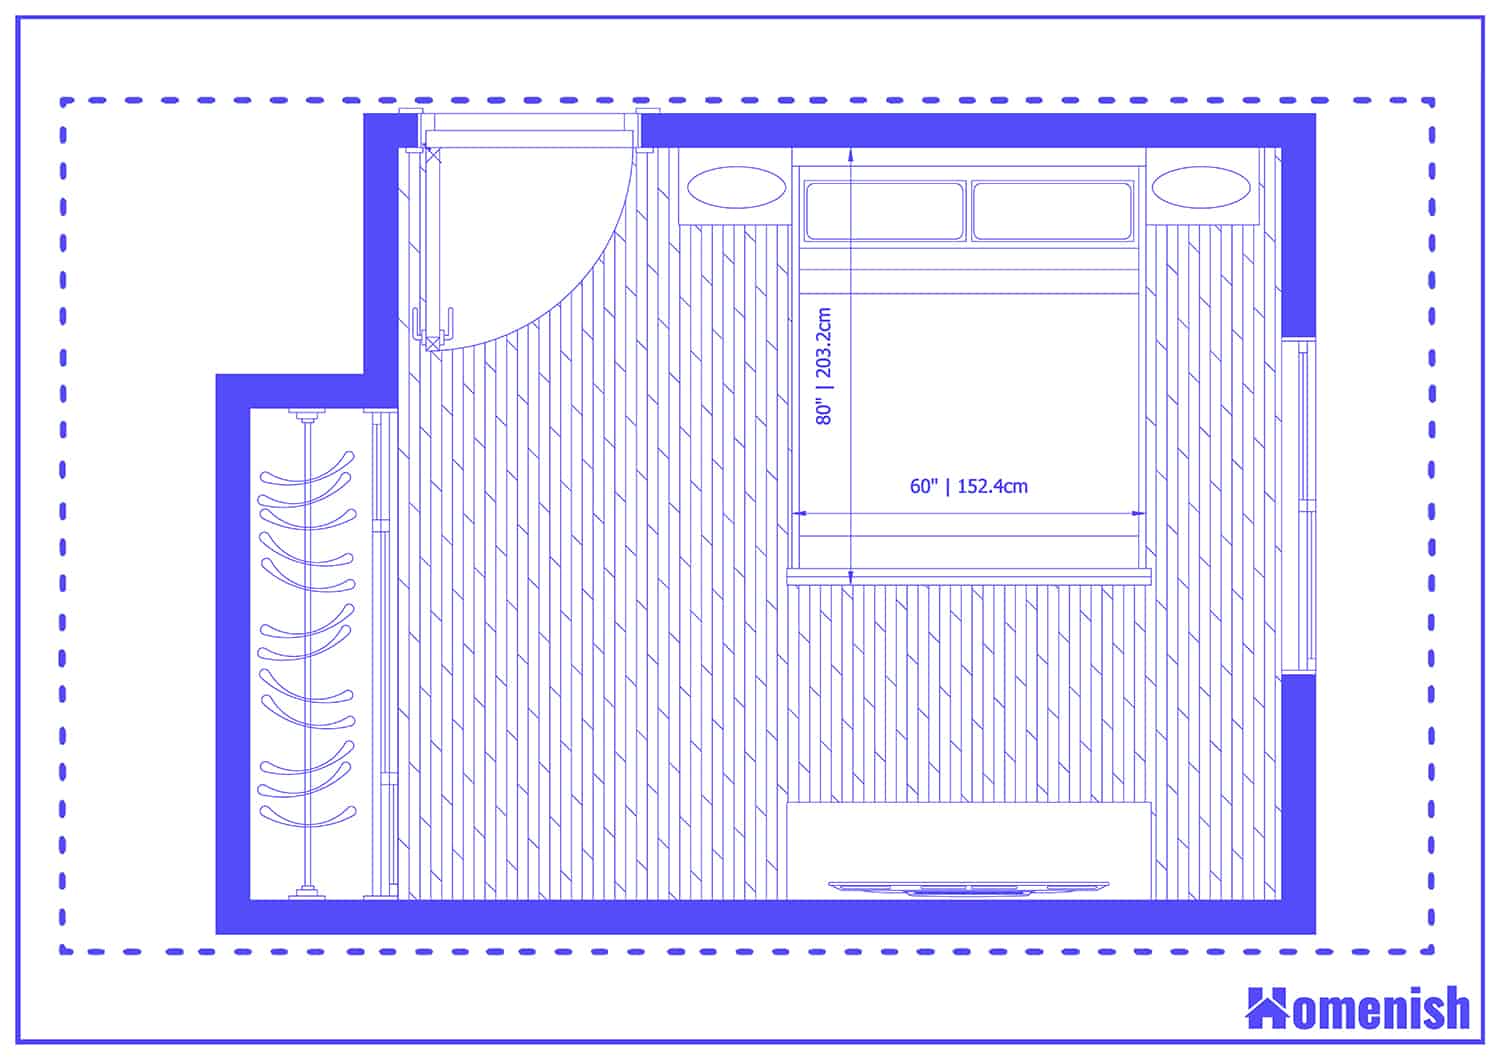 Simple Queen Bed Layout Floor Plan